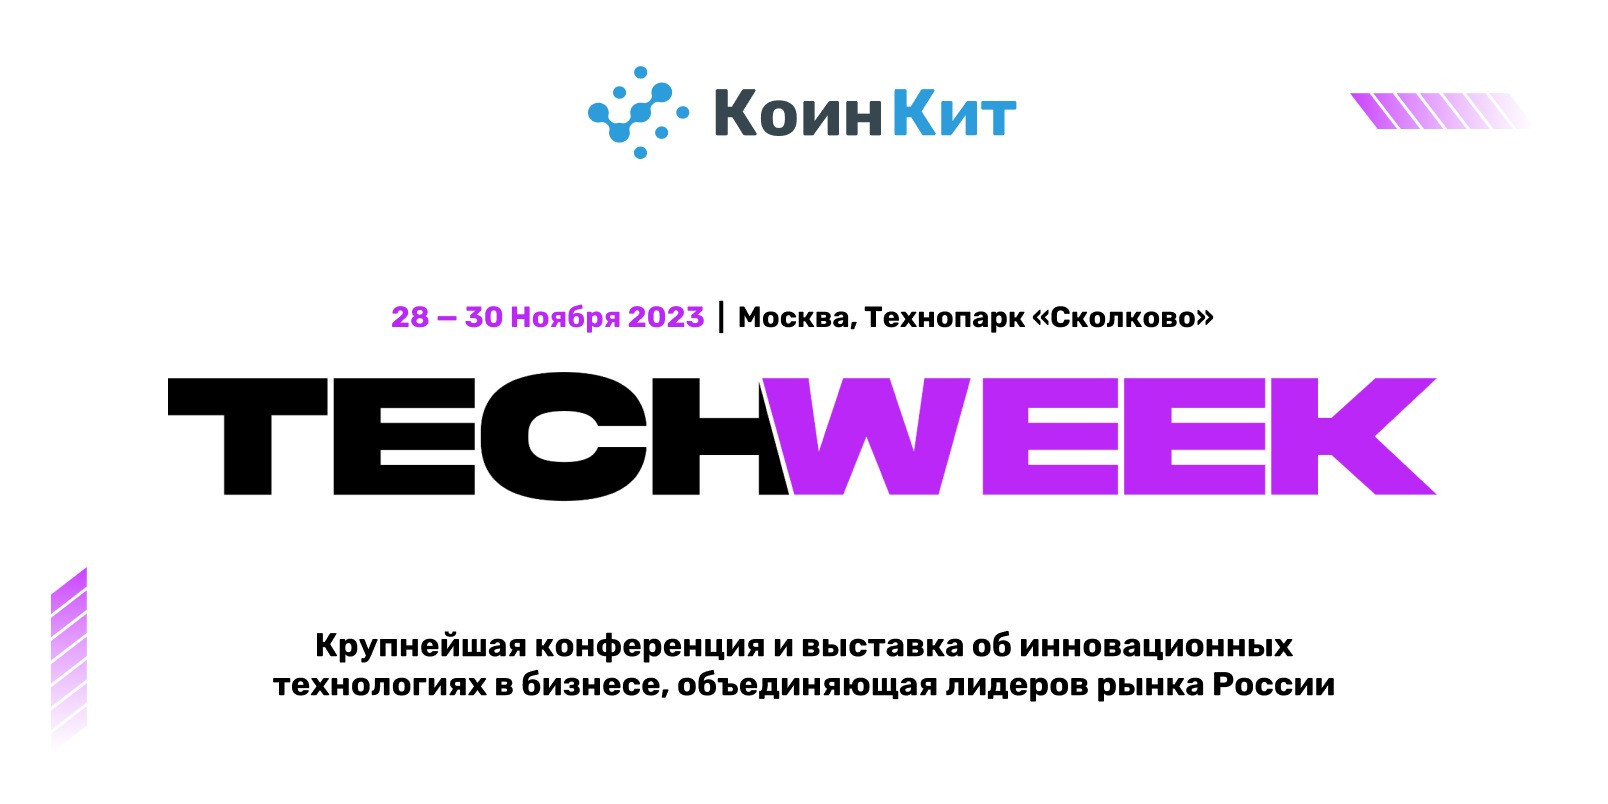 КоинКит участвует в TECH WEEK 2023!